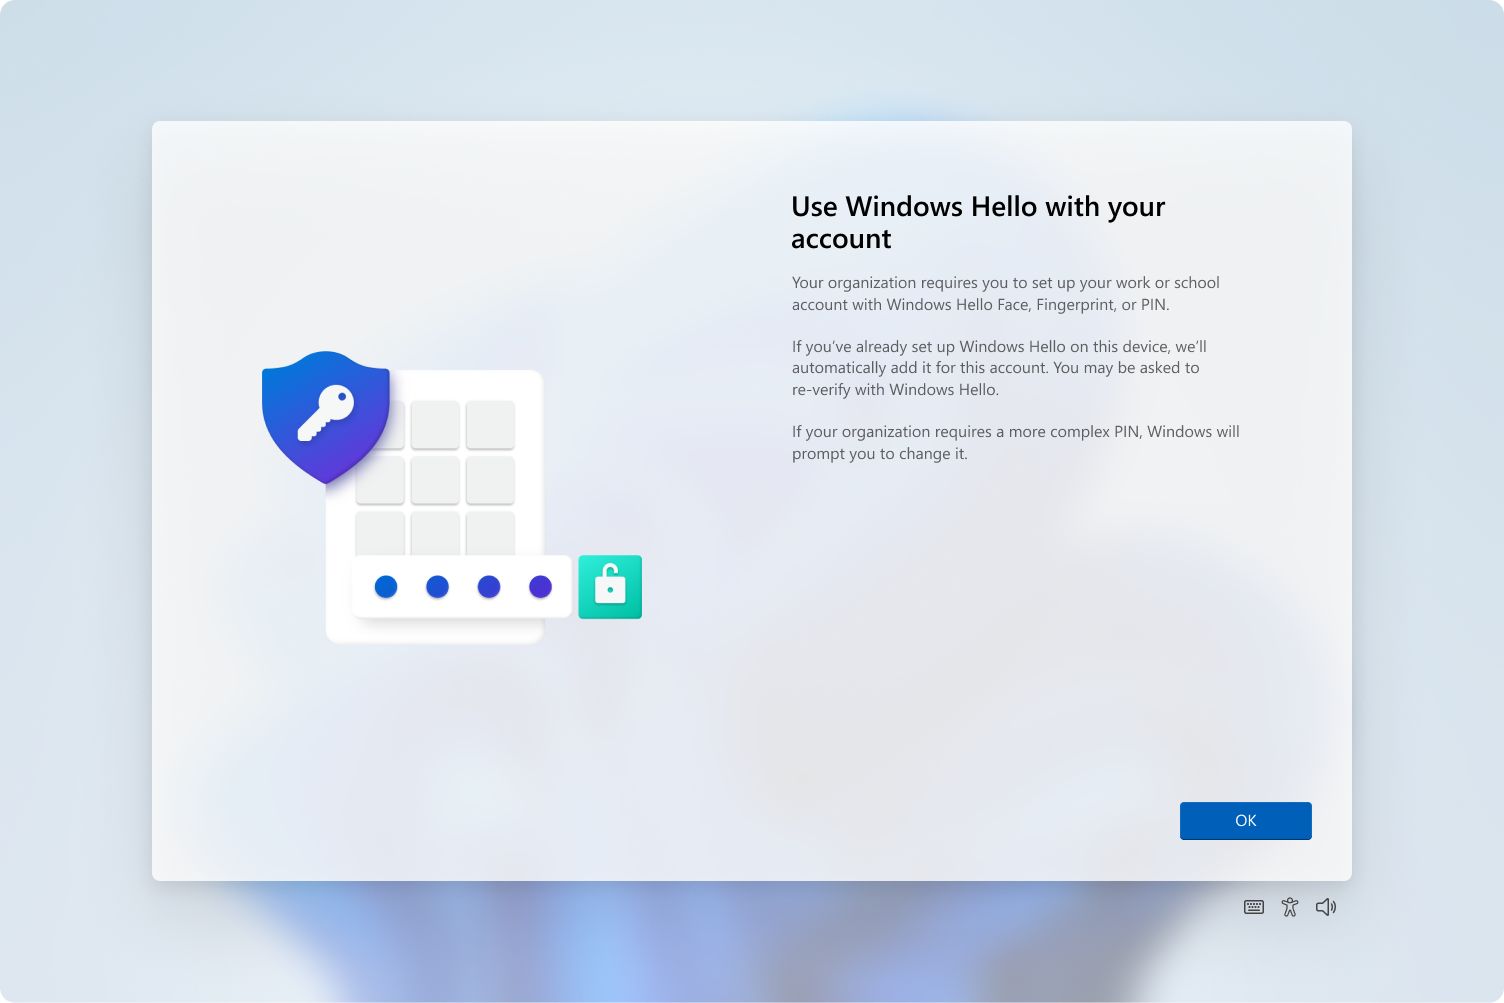 Captura de pantalla del host de experiencia en la nube que pide al usuario que aprovisione Windows Hello.